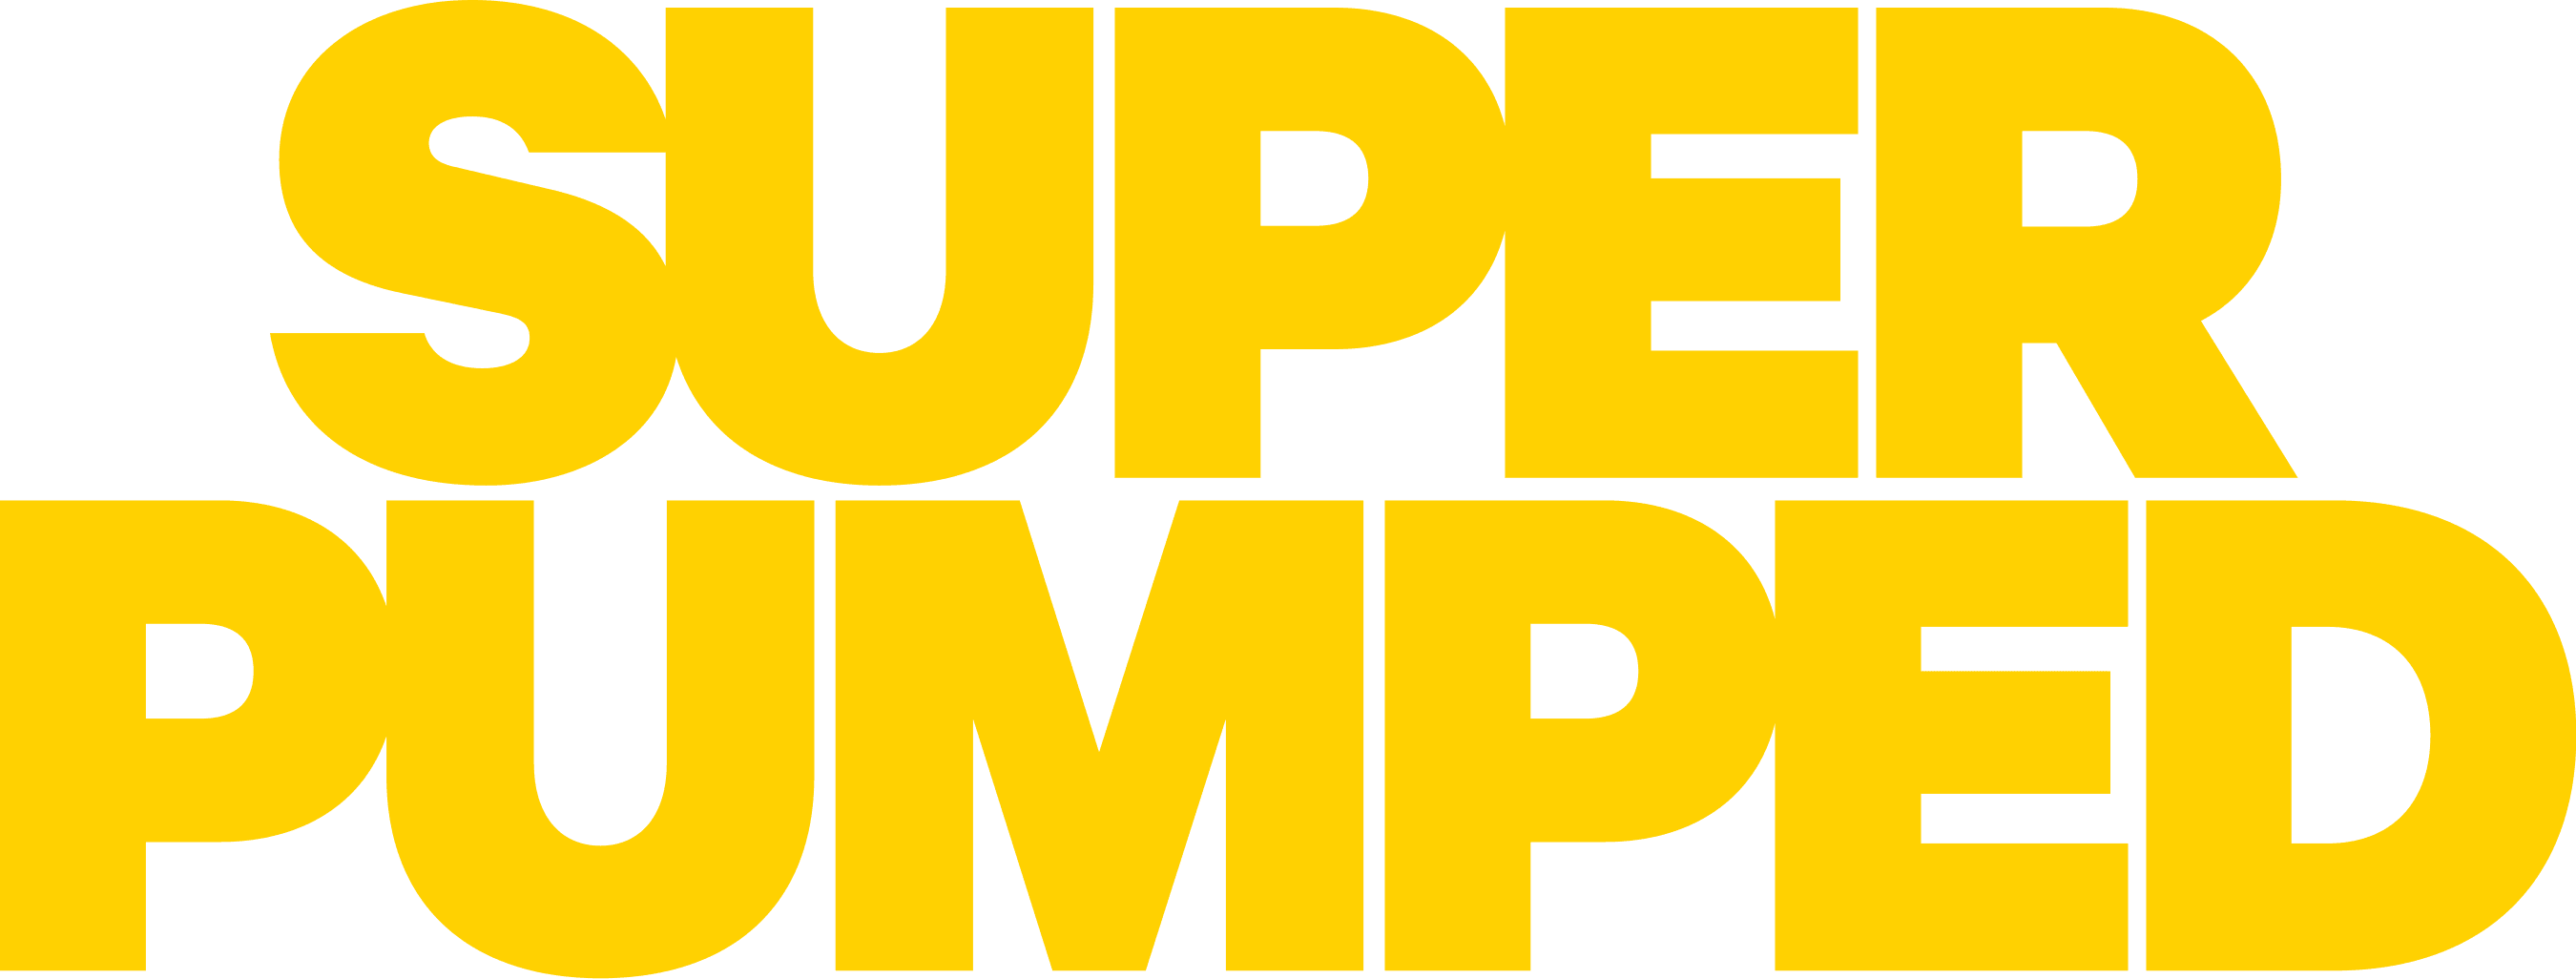 Super Pumped logo